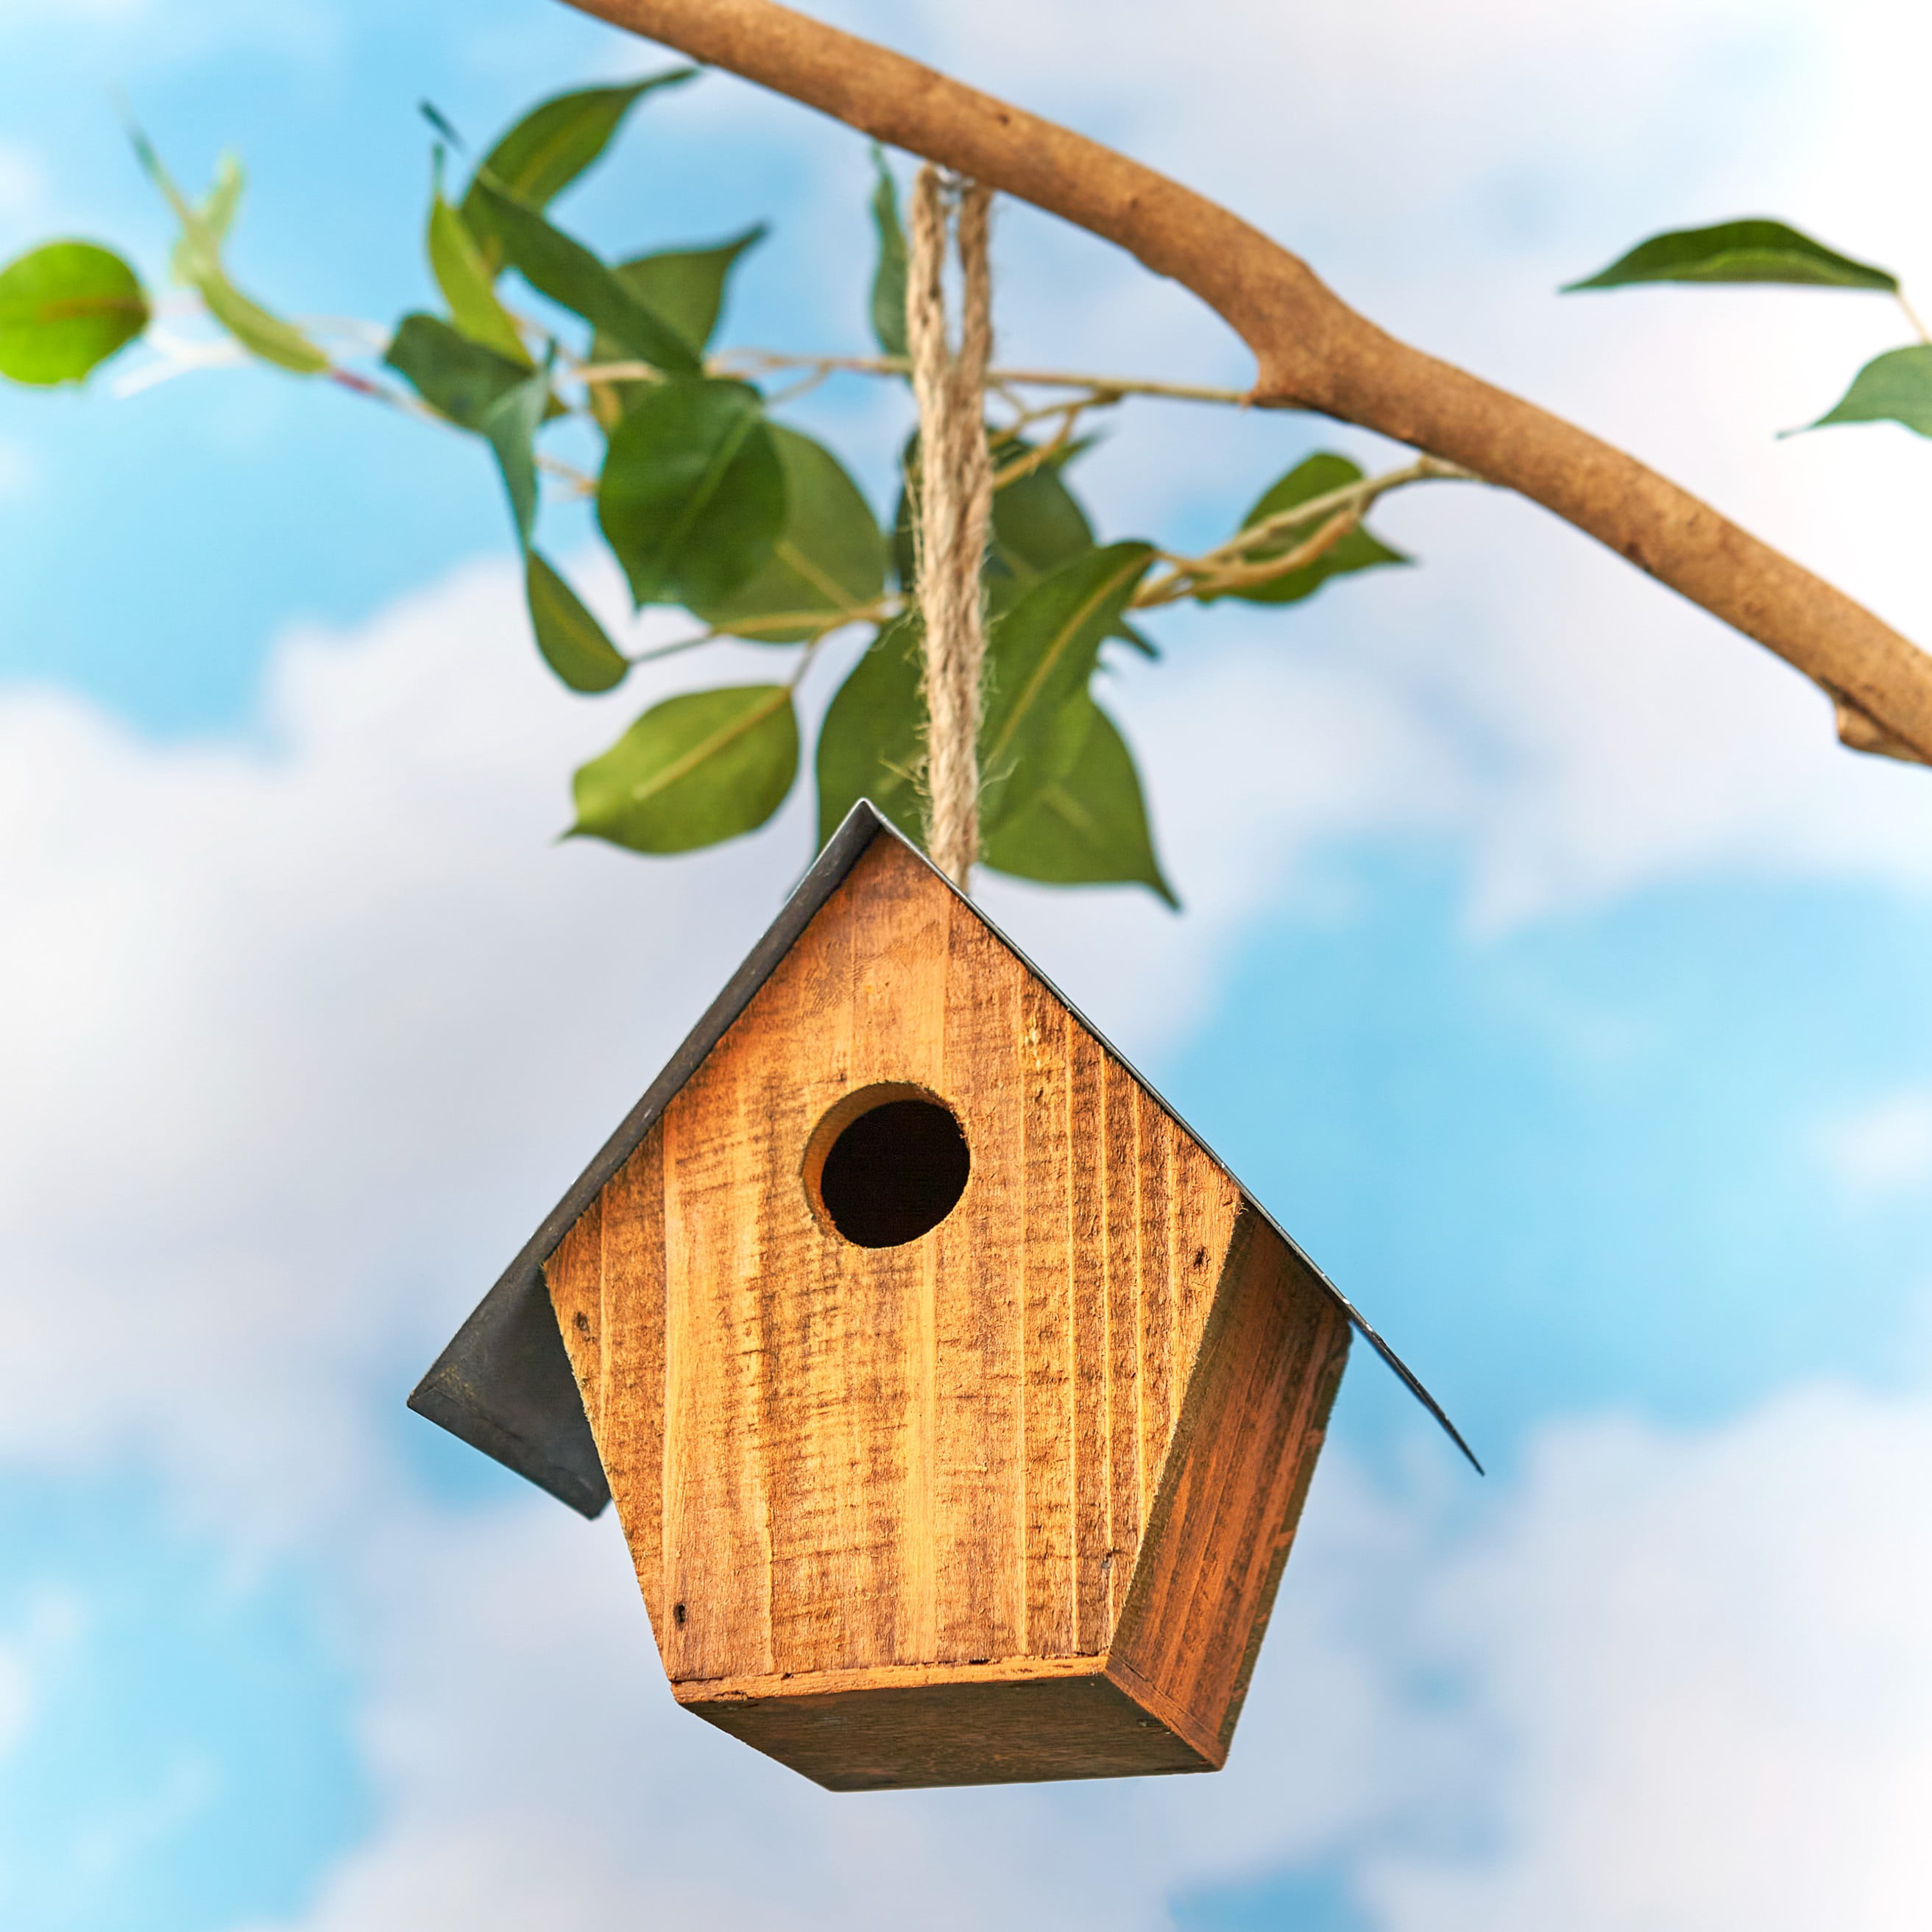 4pcs Bird Nest Creative Wooden Rustic Birdhouse Box for Garden Home Decor NEW 